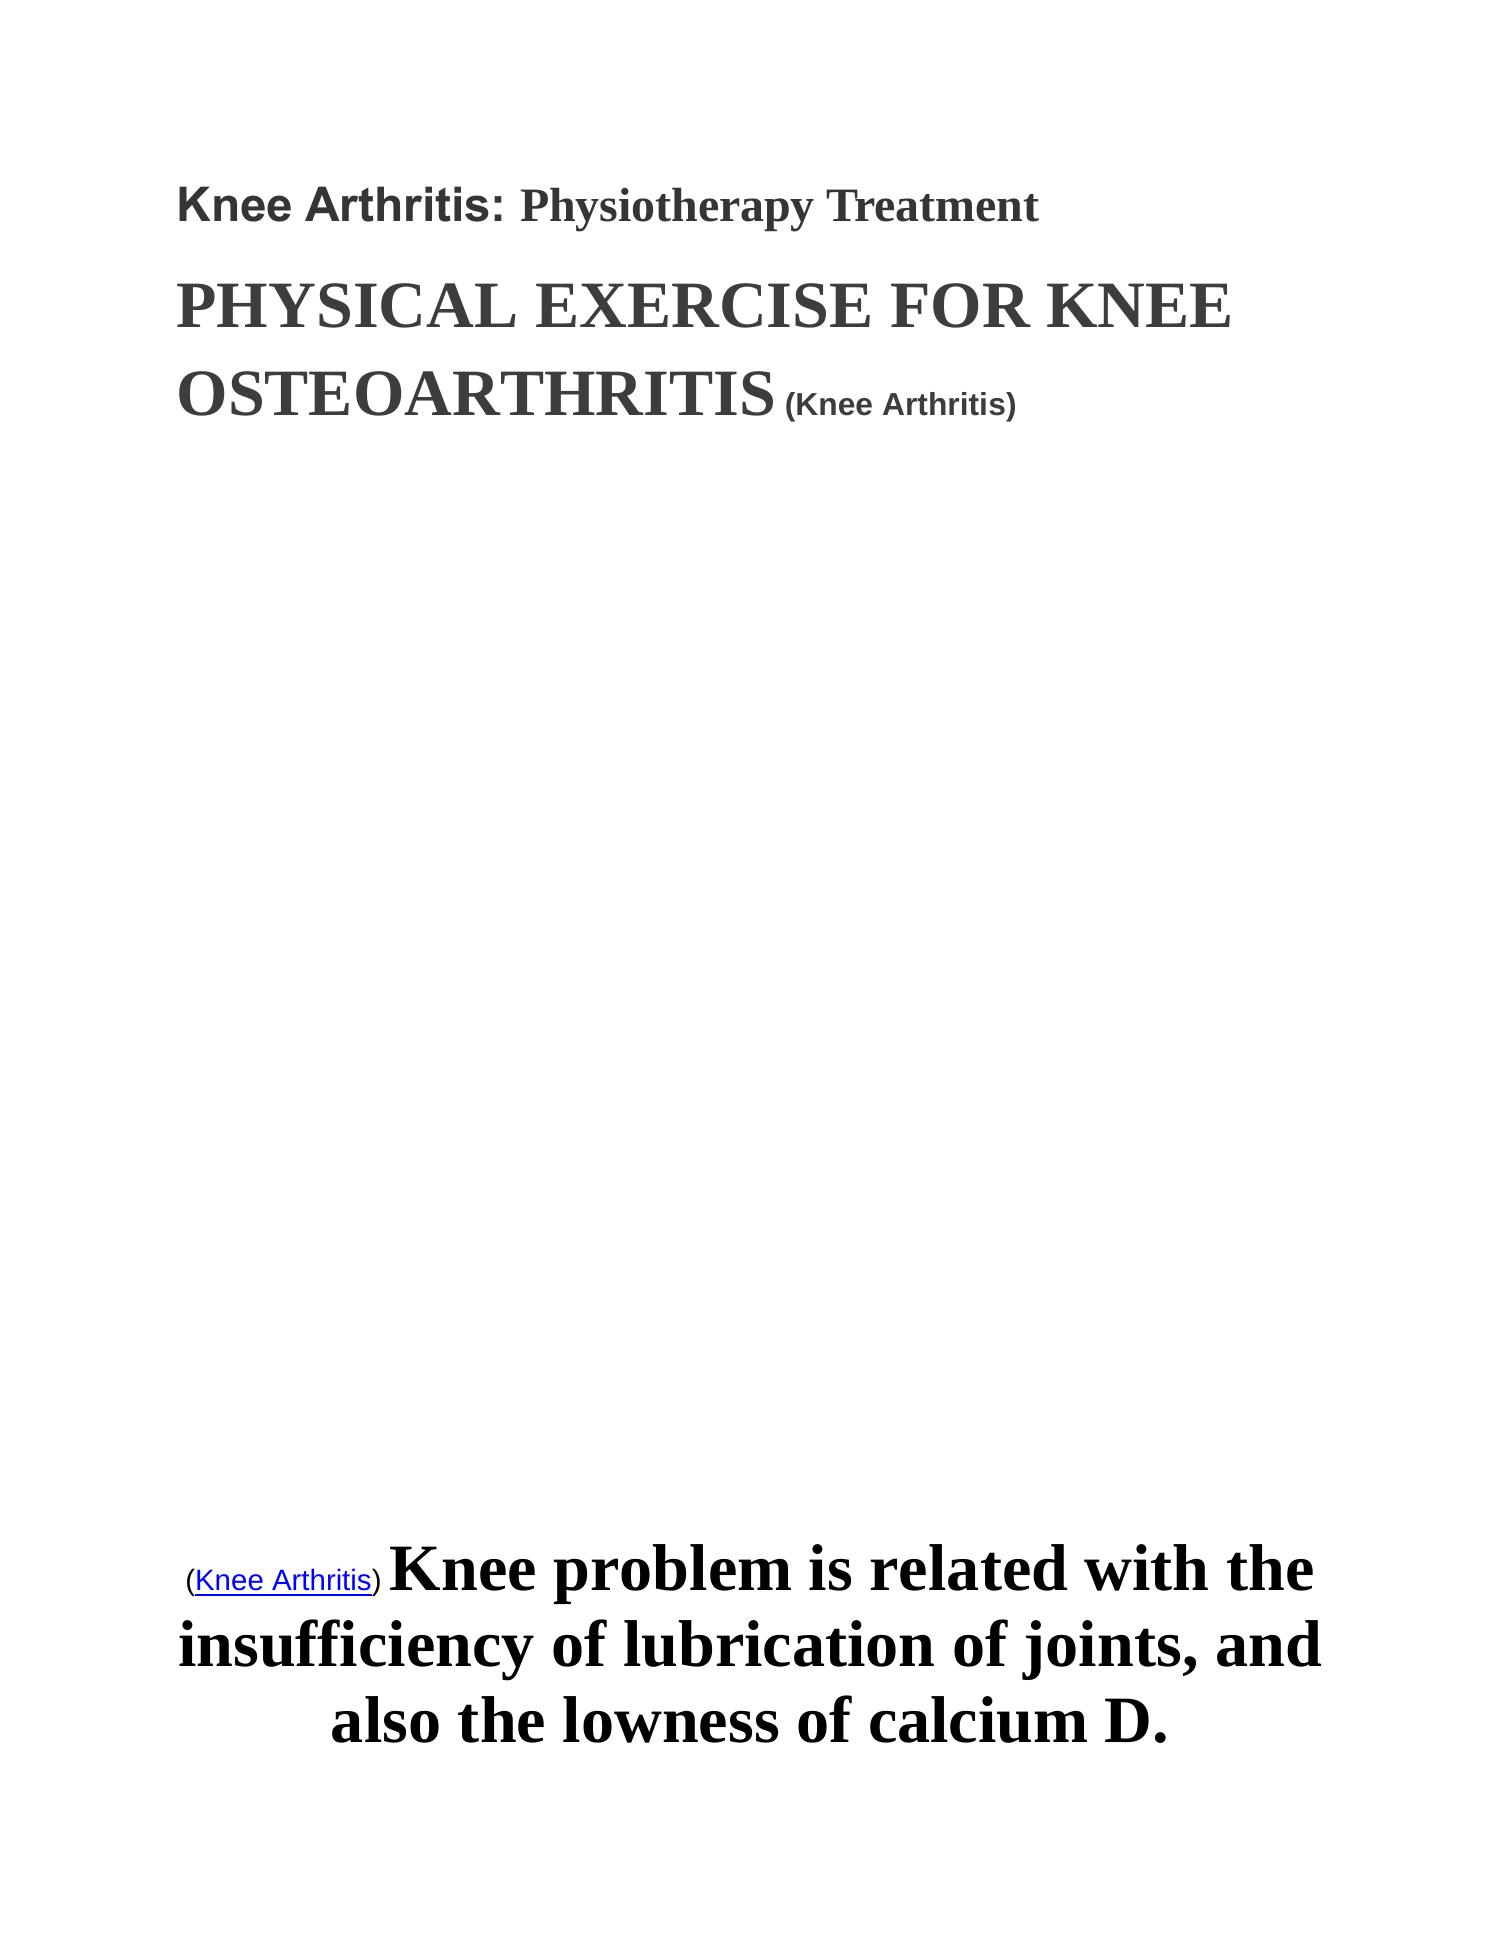 dissertation on knee osteoarthritis